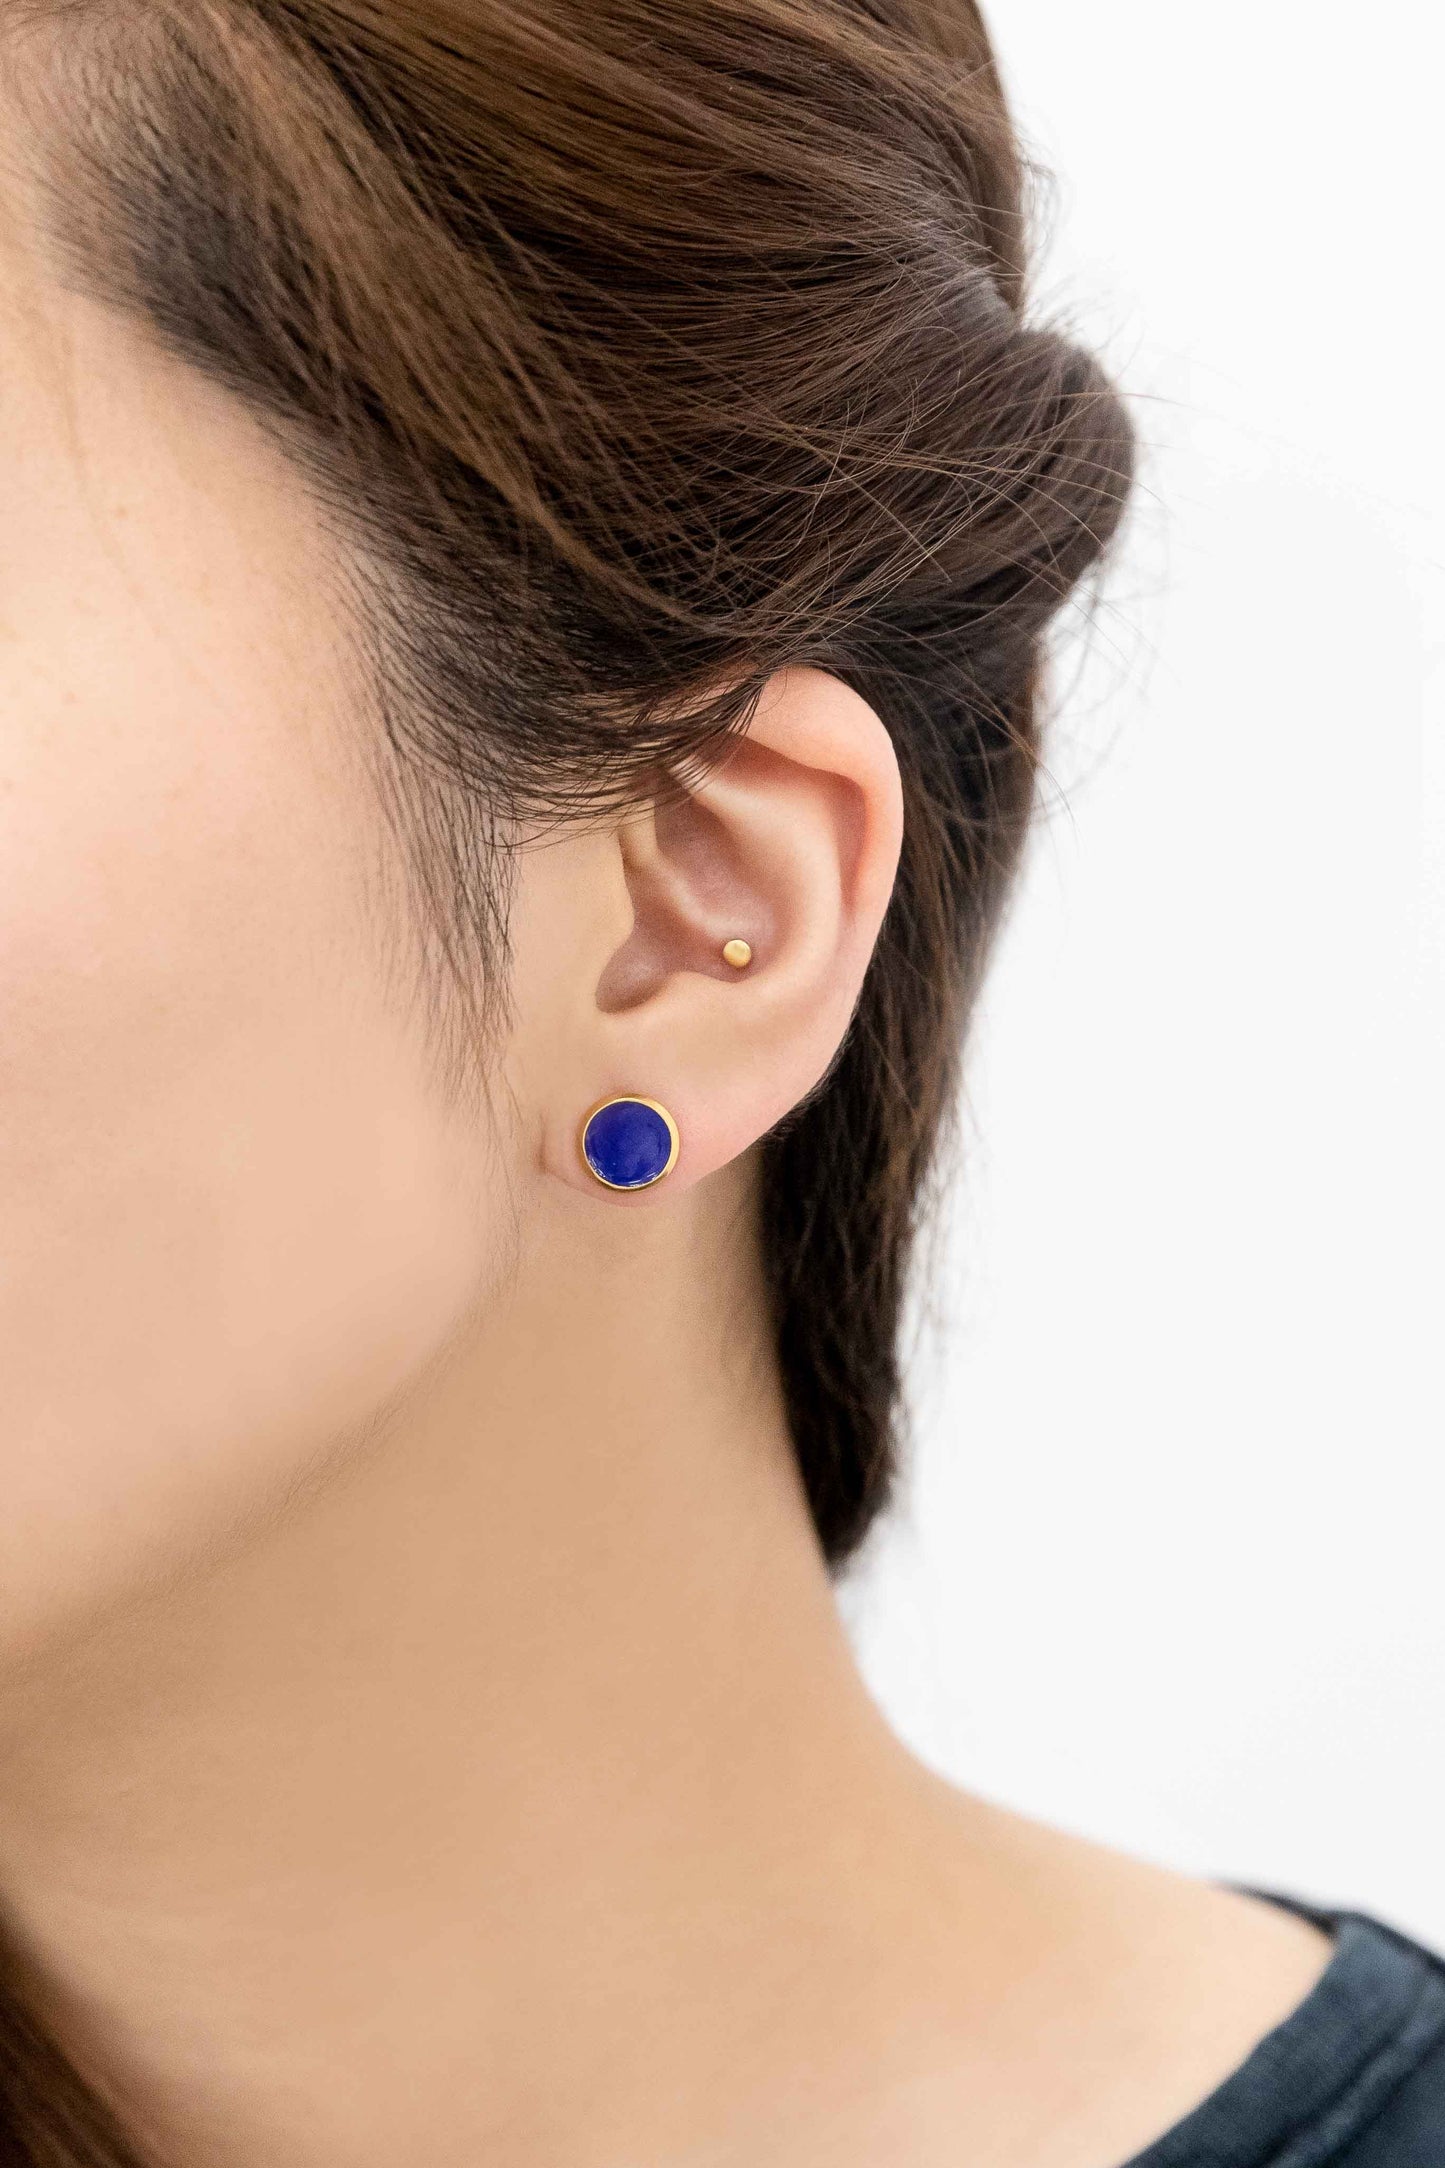 10mm Palette Earrings | Royal Blue (14K)